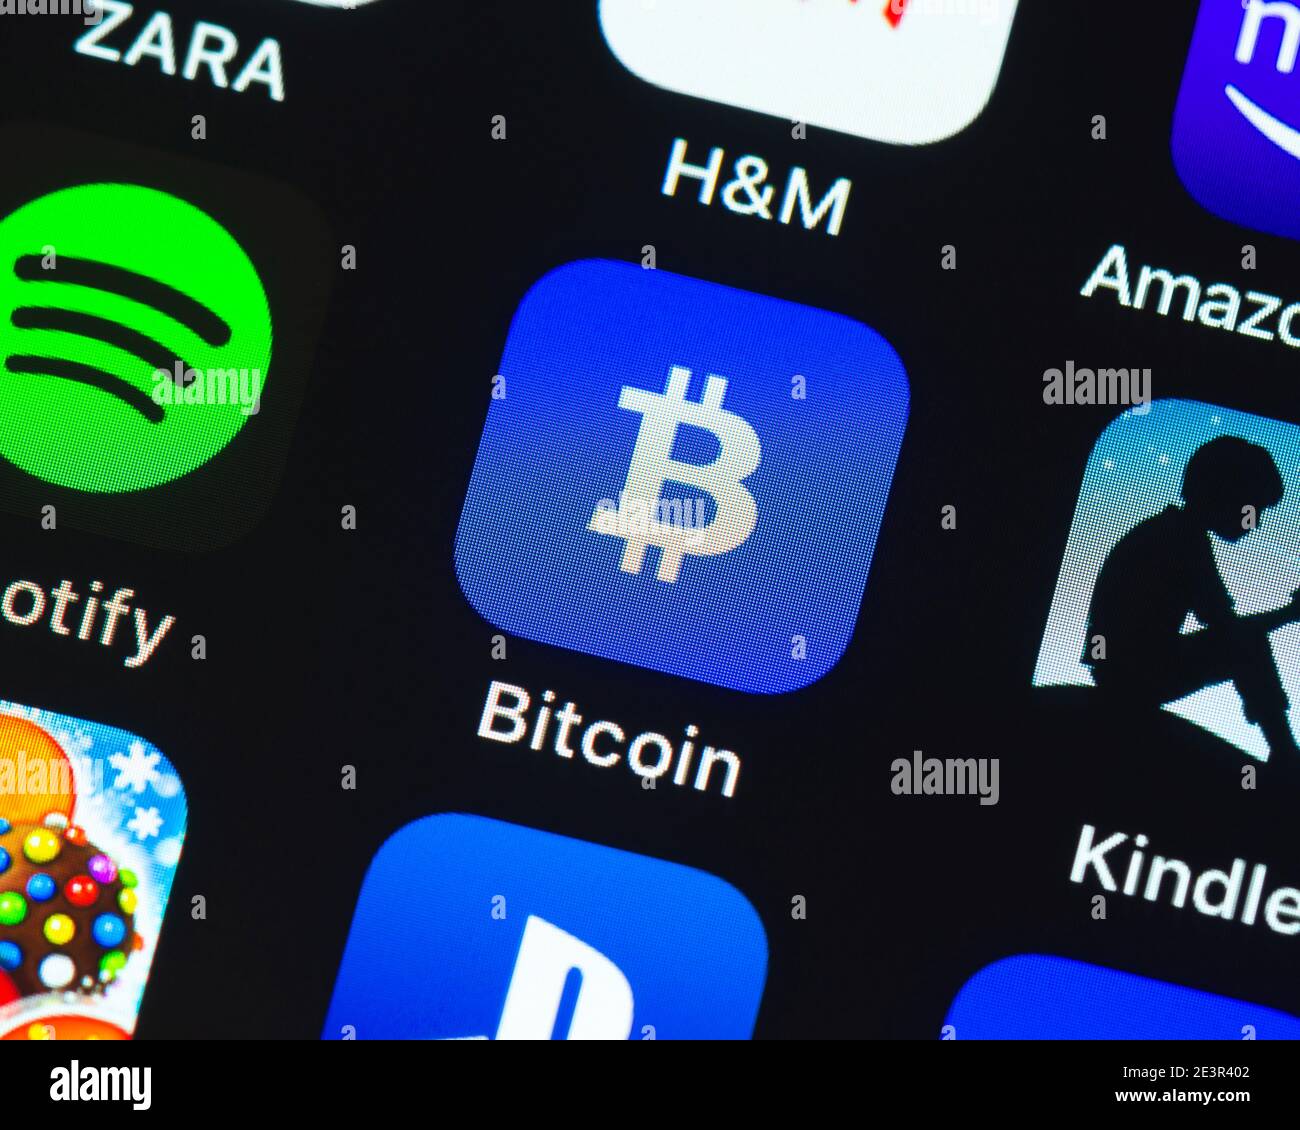 Bitcoin Wallet App-Symbol auf dem Apple iPhone-Bildschirm. Bitcoin Wallet ist eine Kryptowährungs-Trading-App. Stockfoto